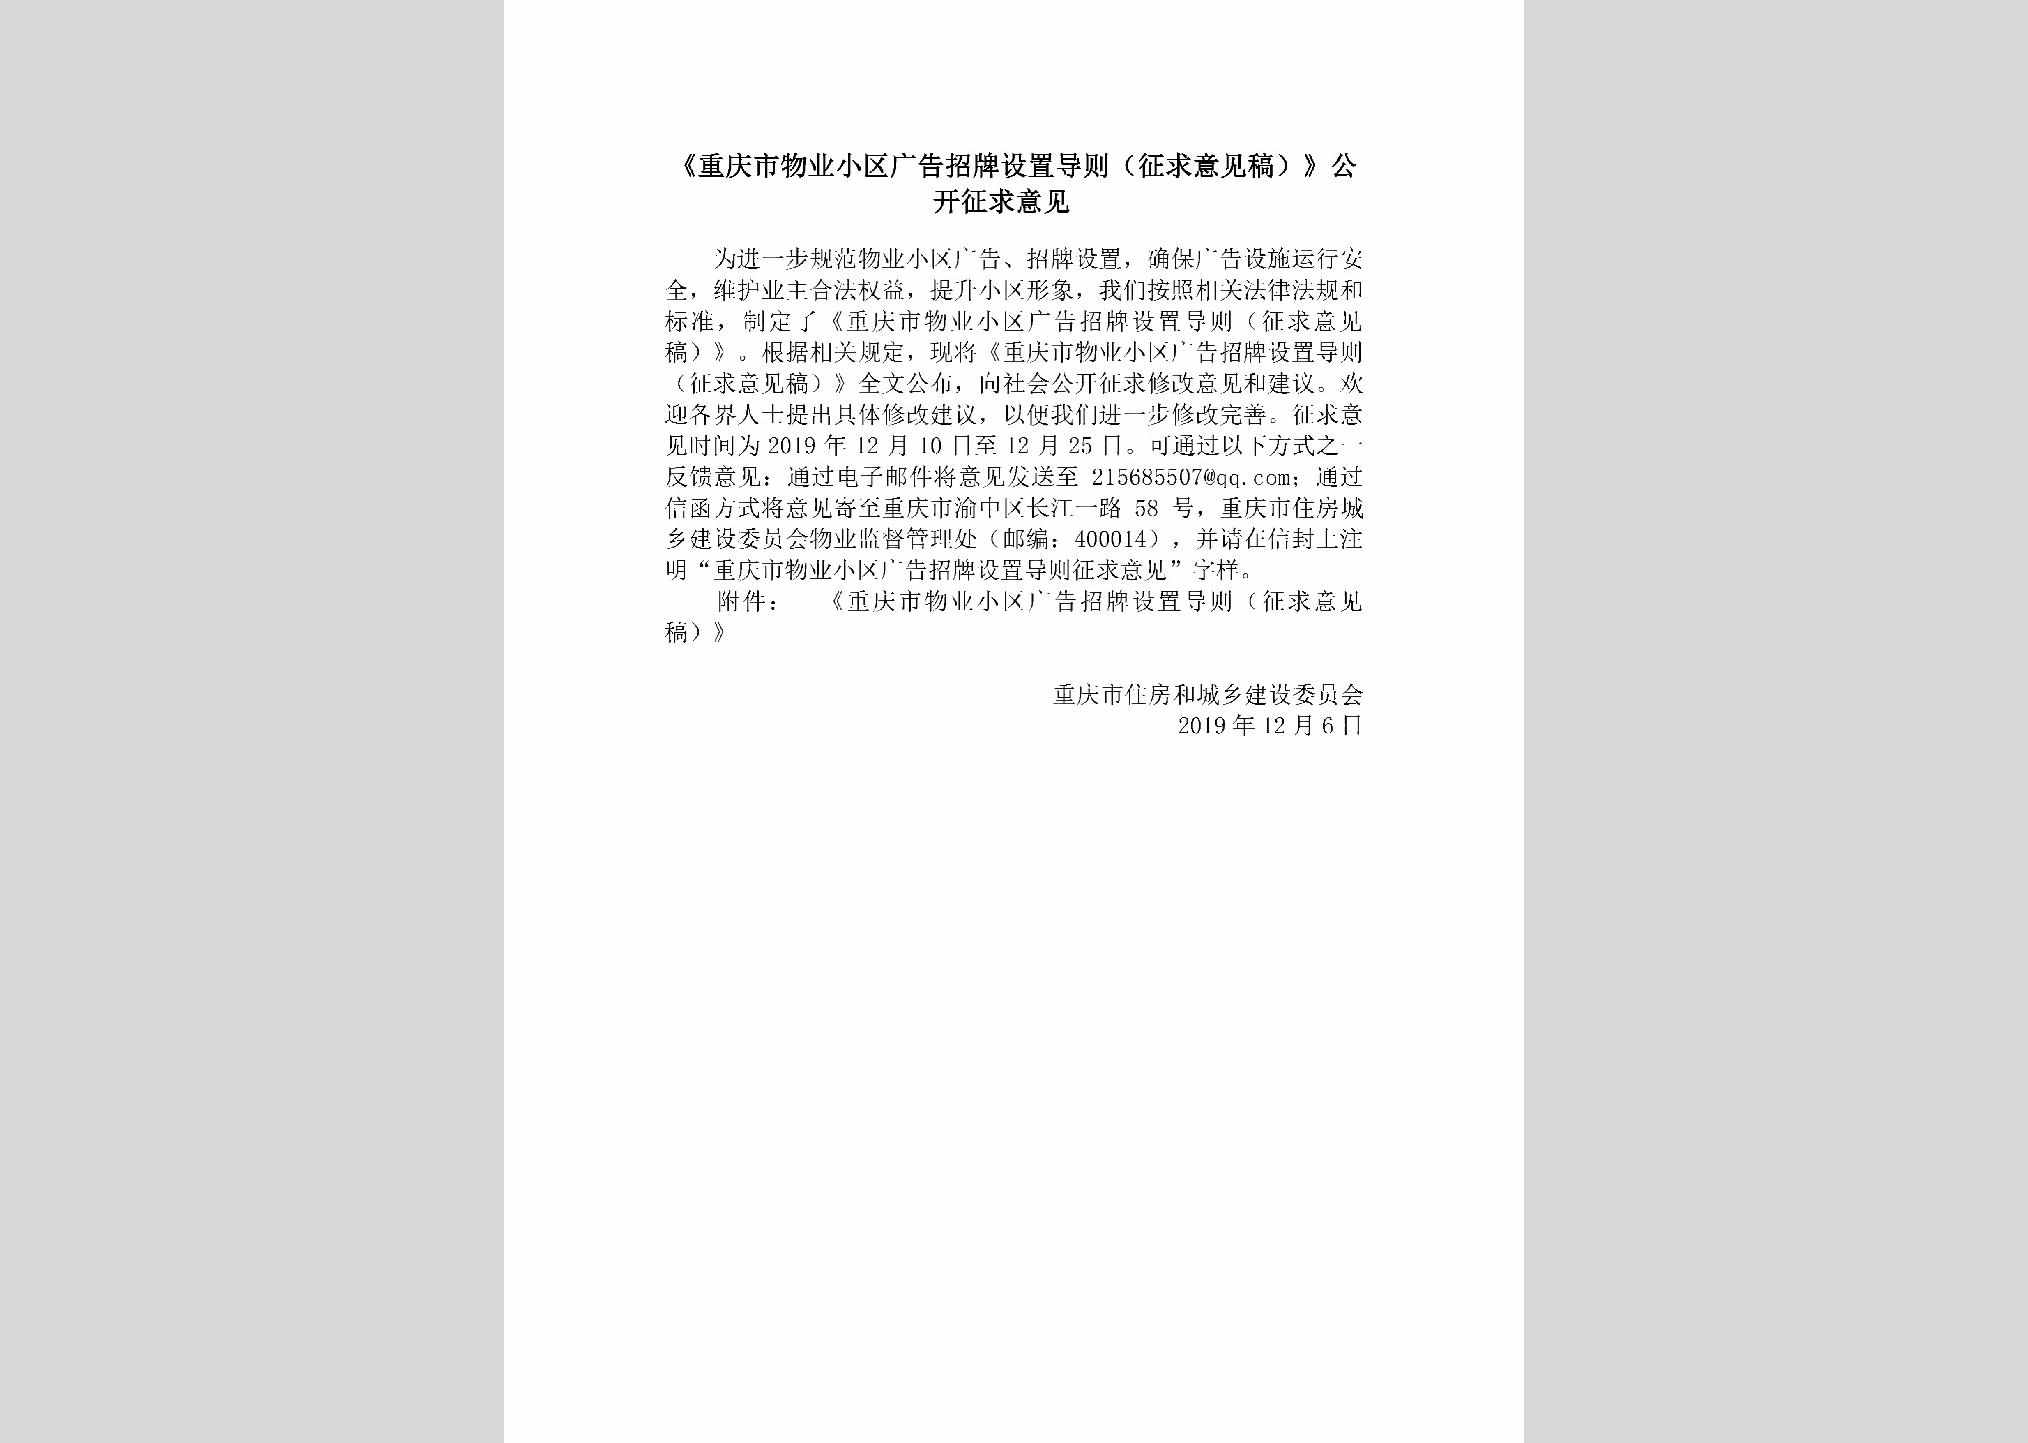 CQ-WYXQGGZP-2019：《重庆市物业小区广告招牌设置导则（征求意见稿）》公开征求意见